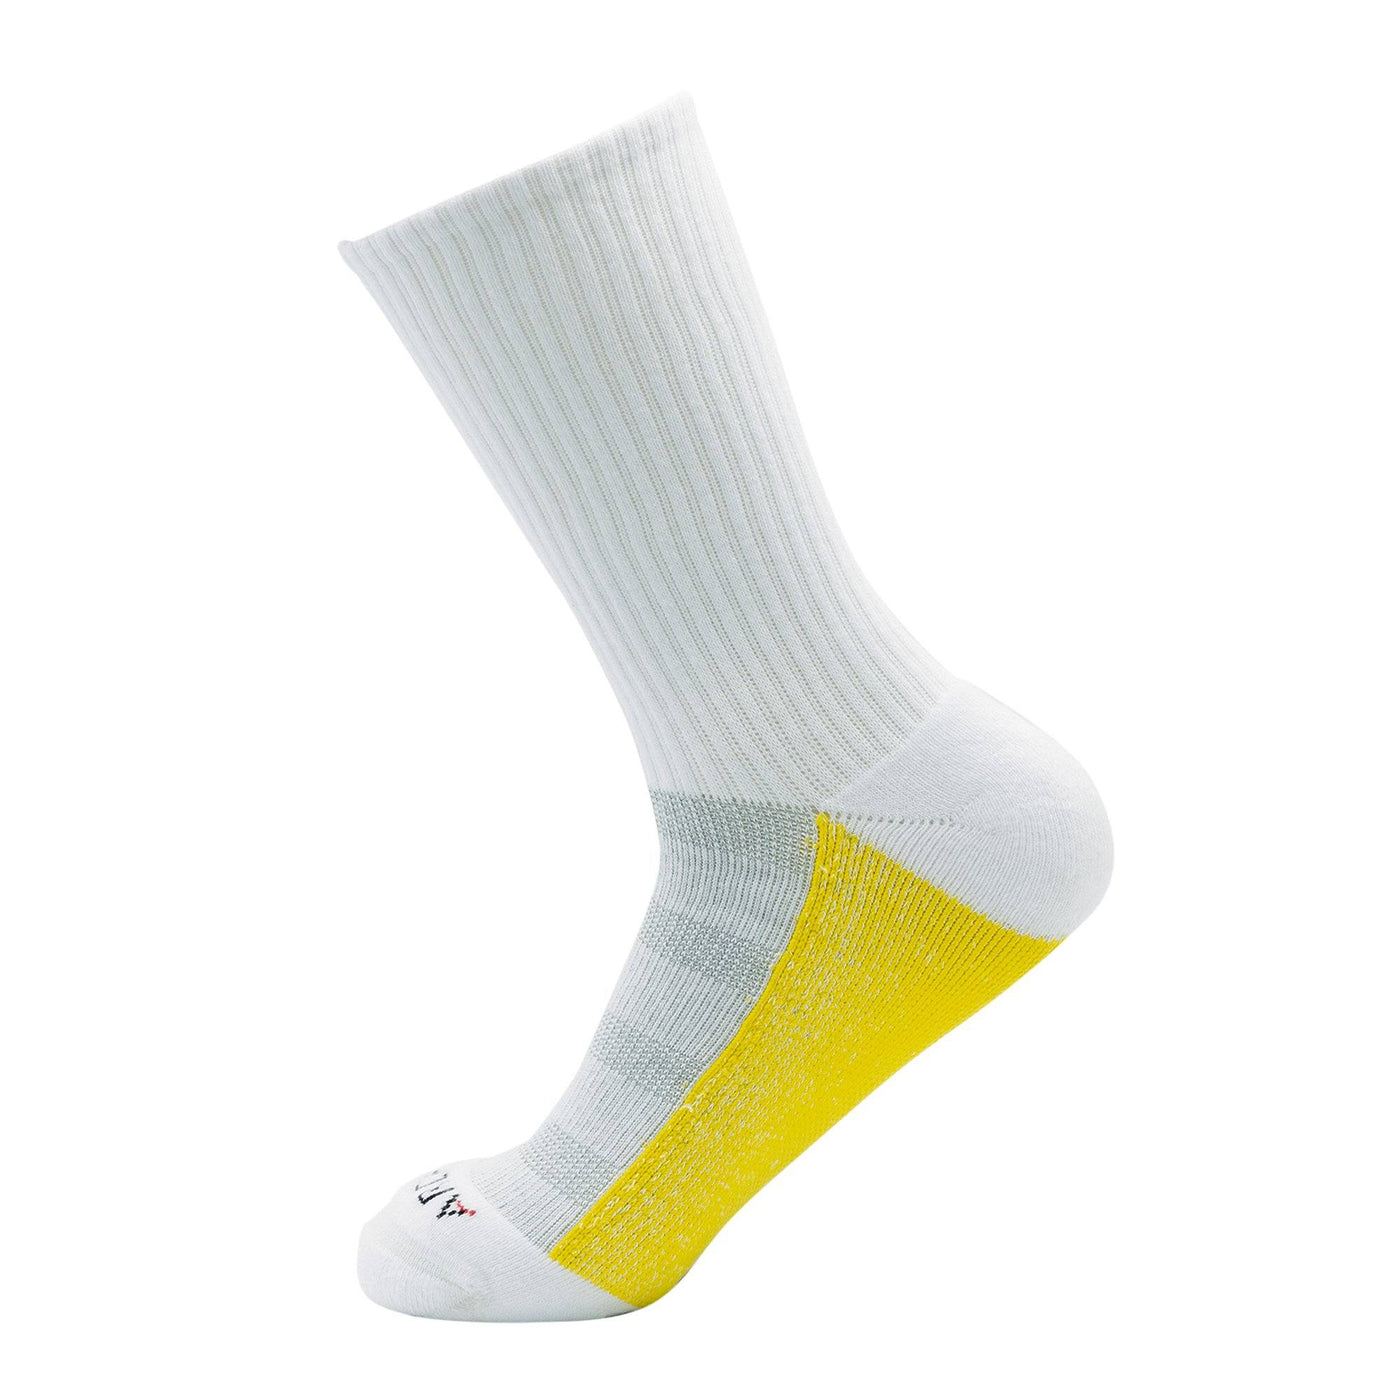 ArchTek® Crew Socks (3 Pack White) athletic socks ArchTek 